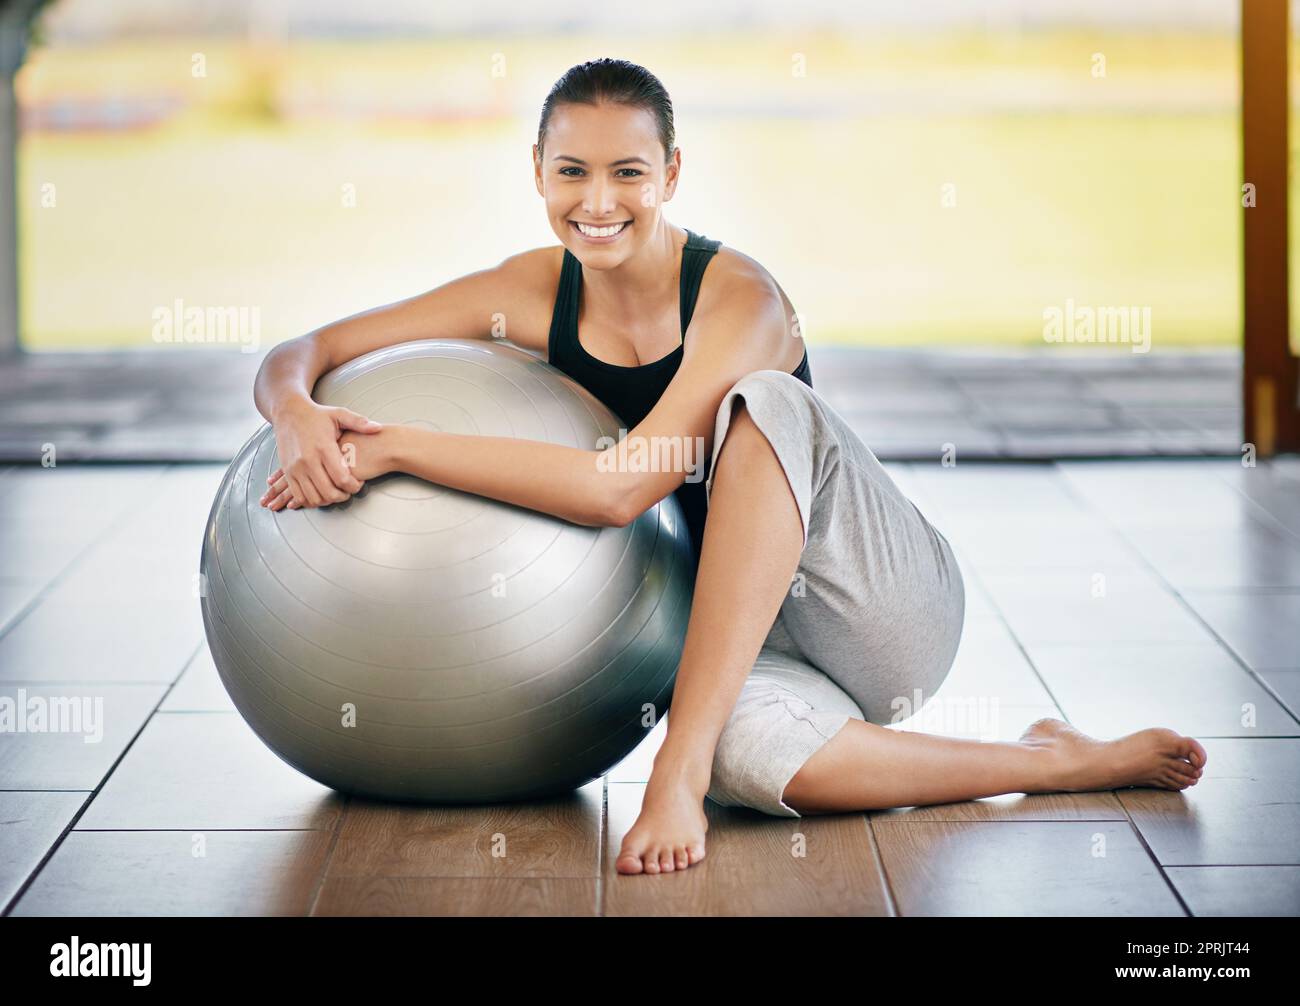 Sentirsi rinfrescati dopo un allenamento. Ritratto completo di una giovane donna seduta contro la palla da ginnastica. Foto Stock